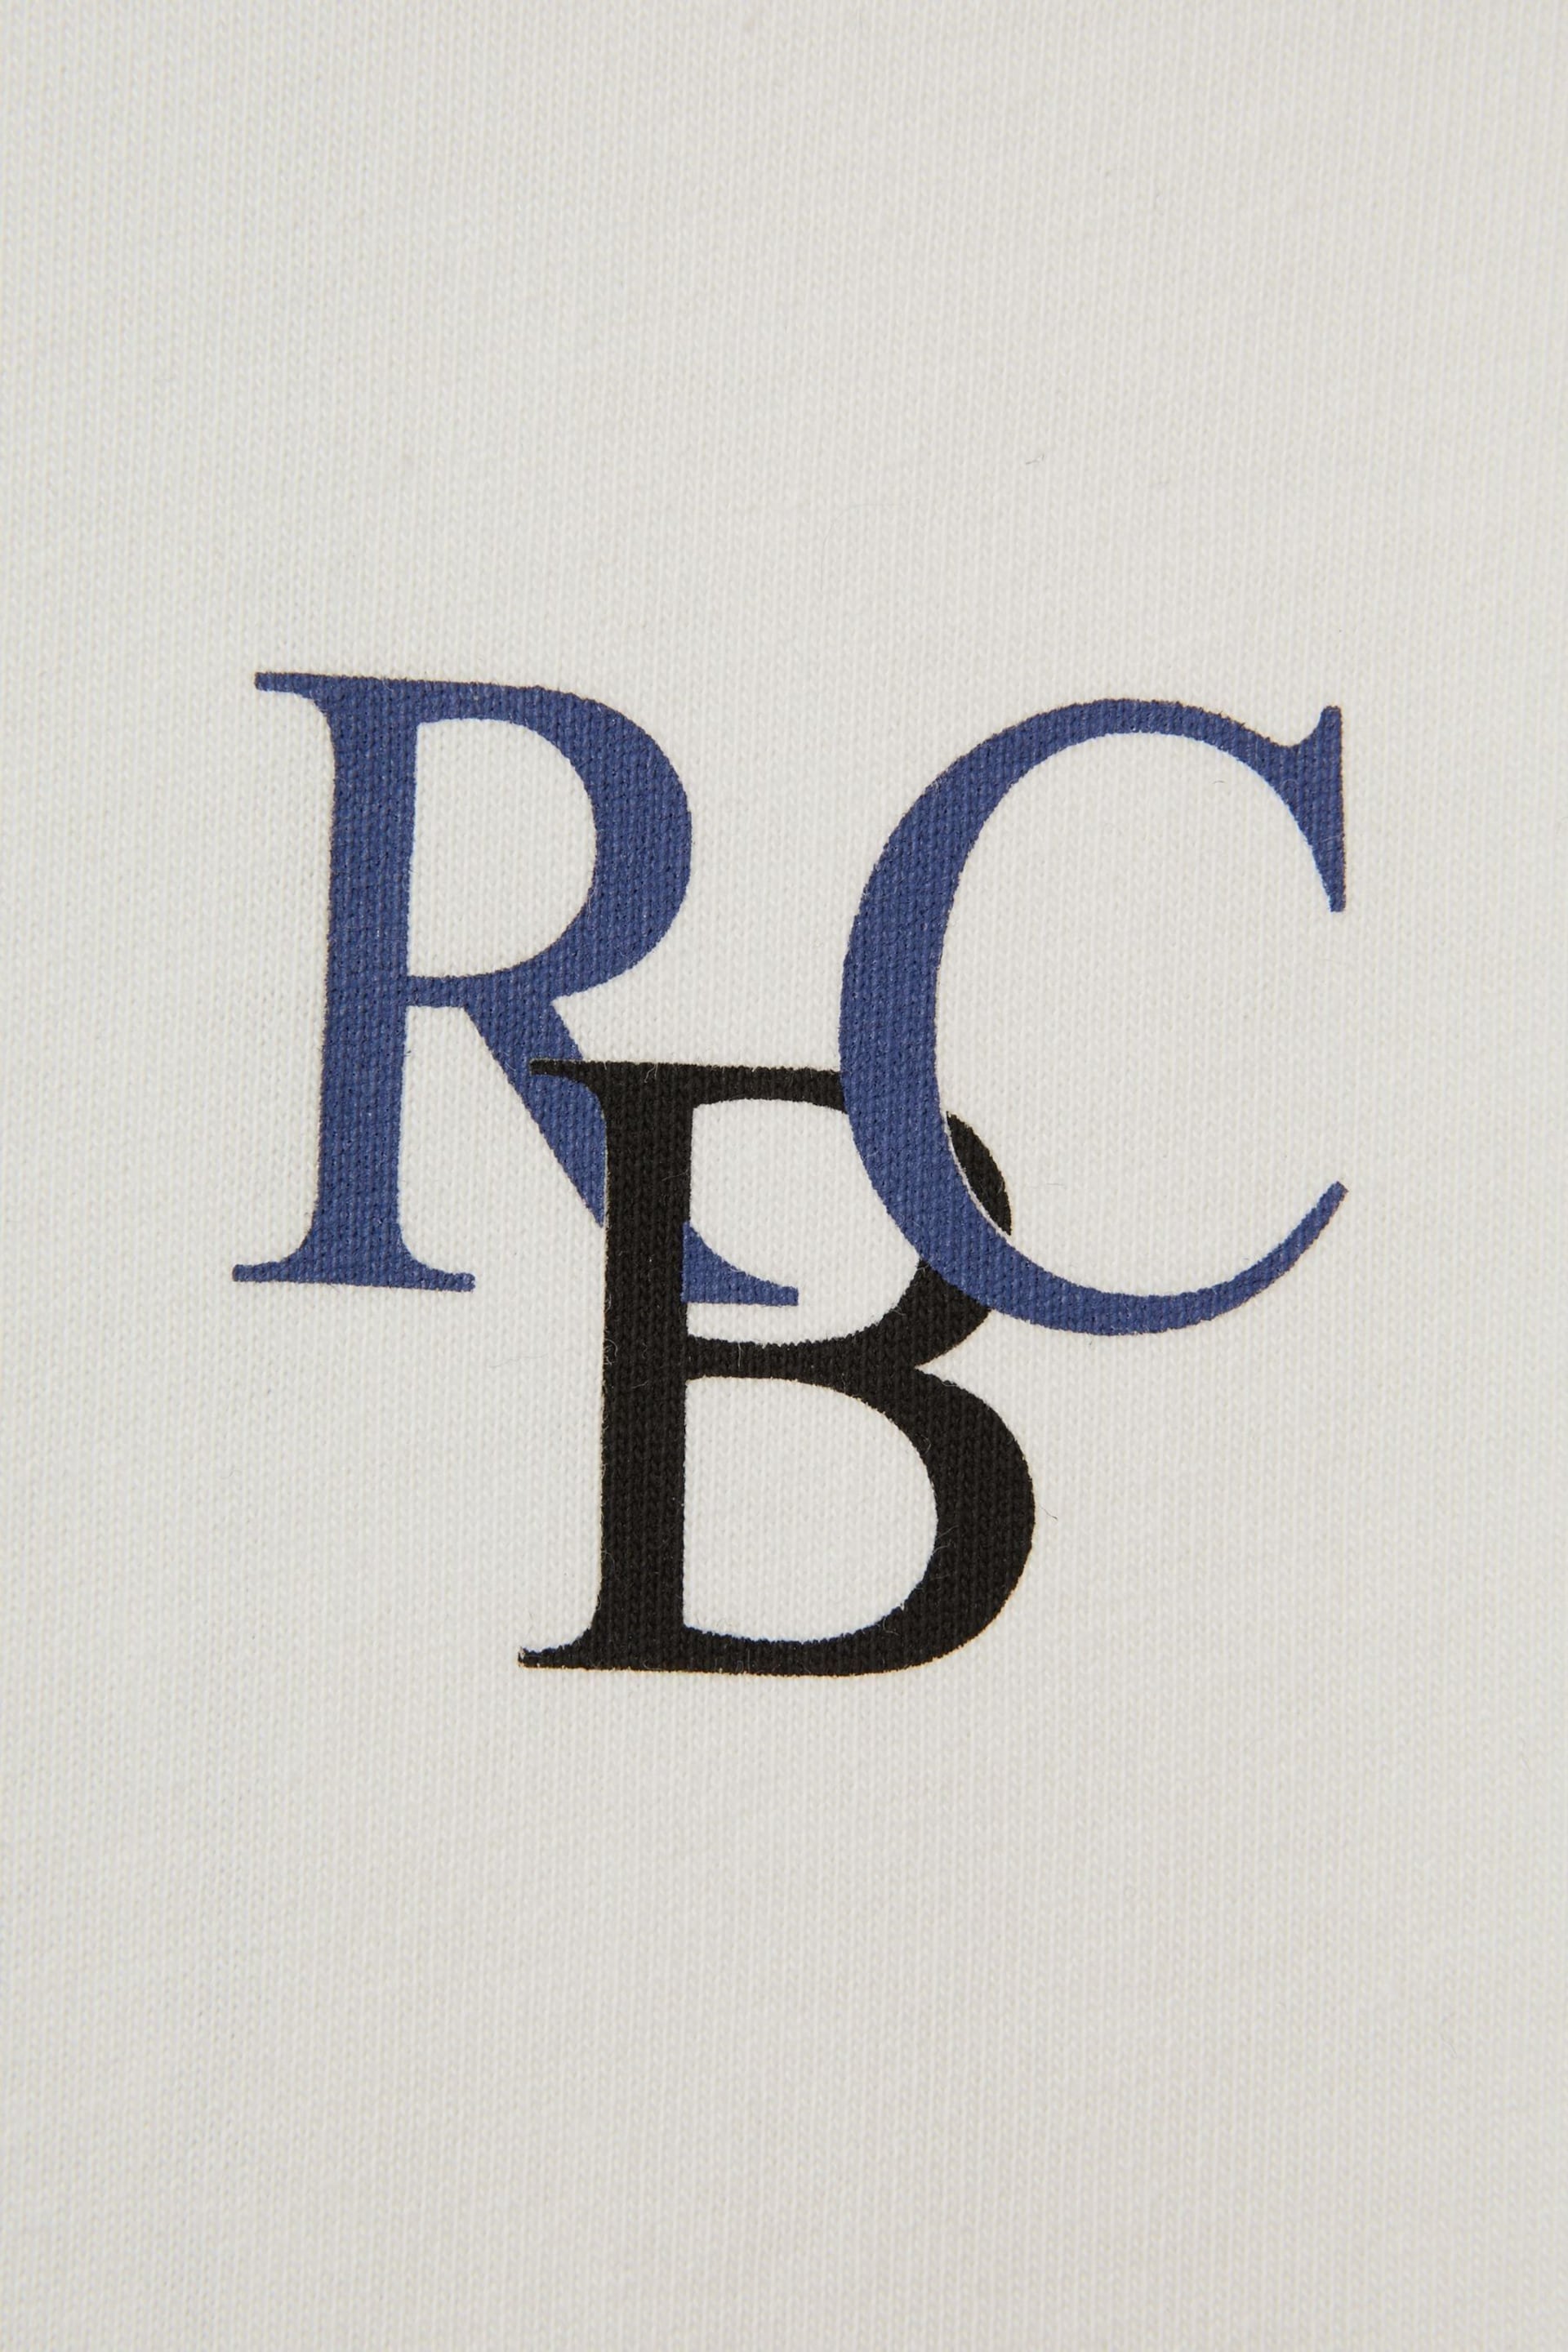 Reiss Ecru/Blue Sennen Senior Oversized Cotton Motif Shirt - Image 4 of 4